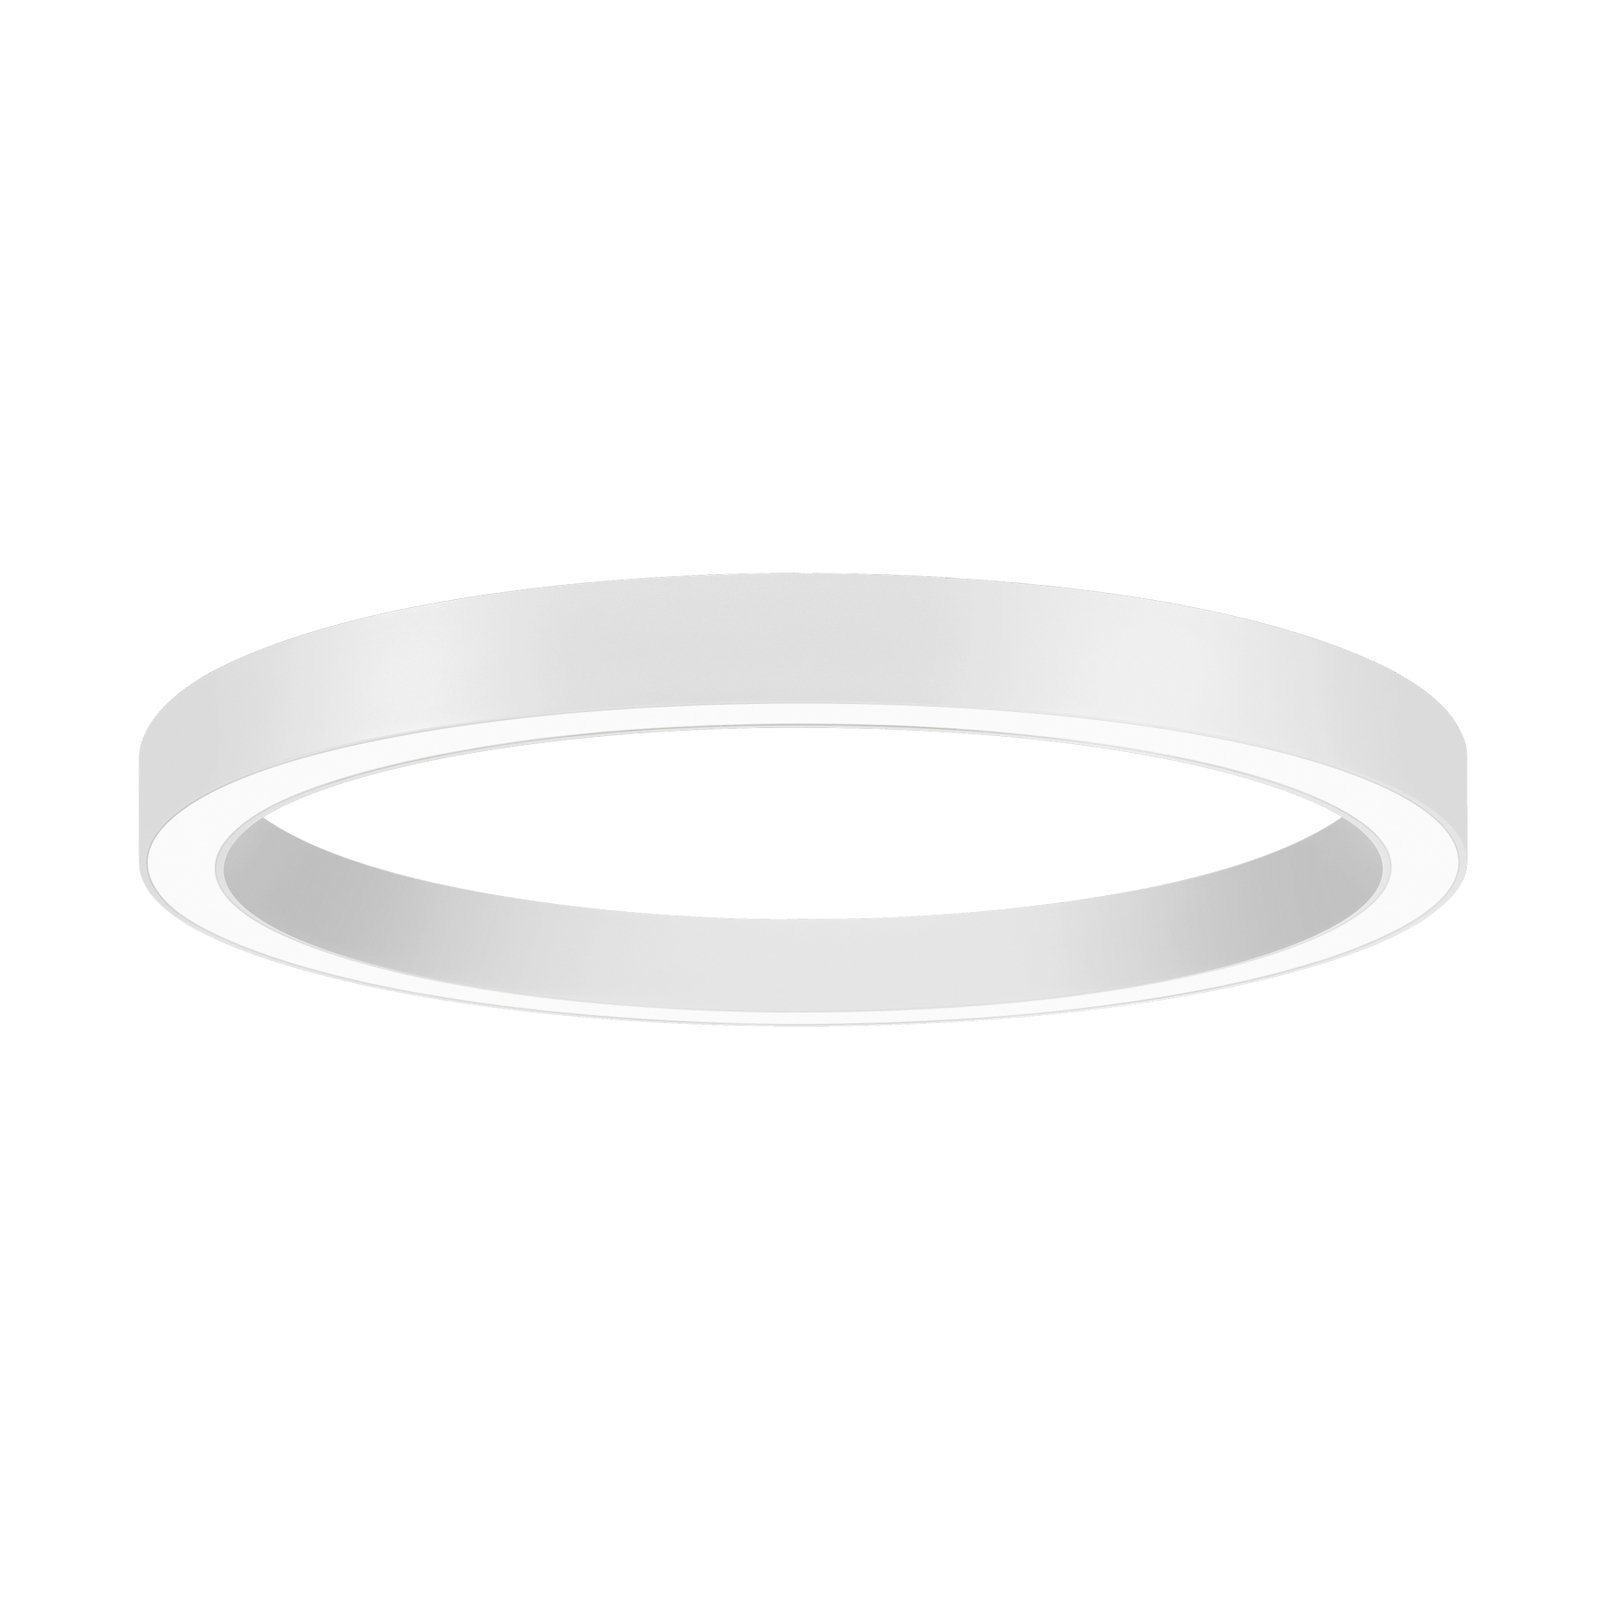 BRUMBERG Biro Circle Ring, Ø 60 cm, Casambi, white, 840